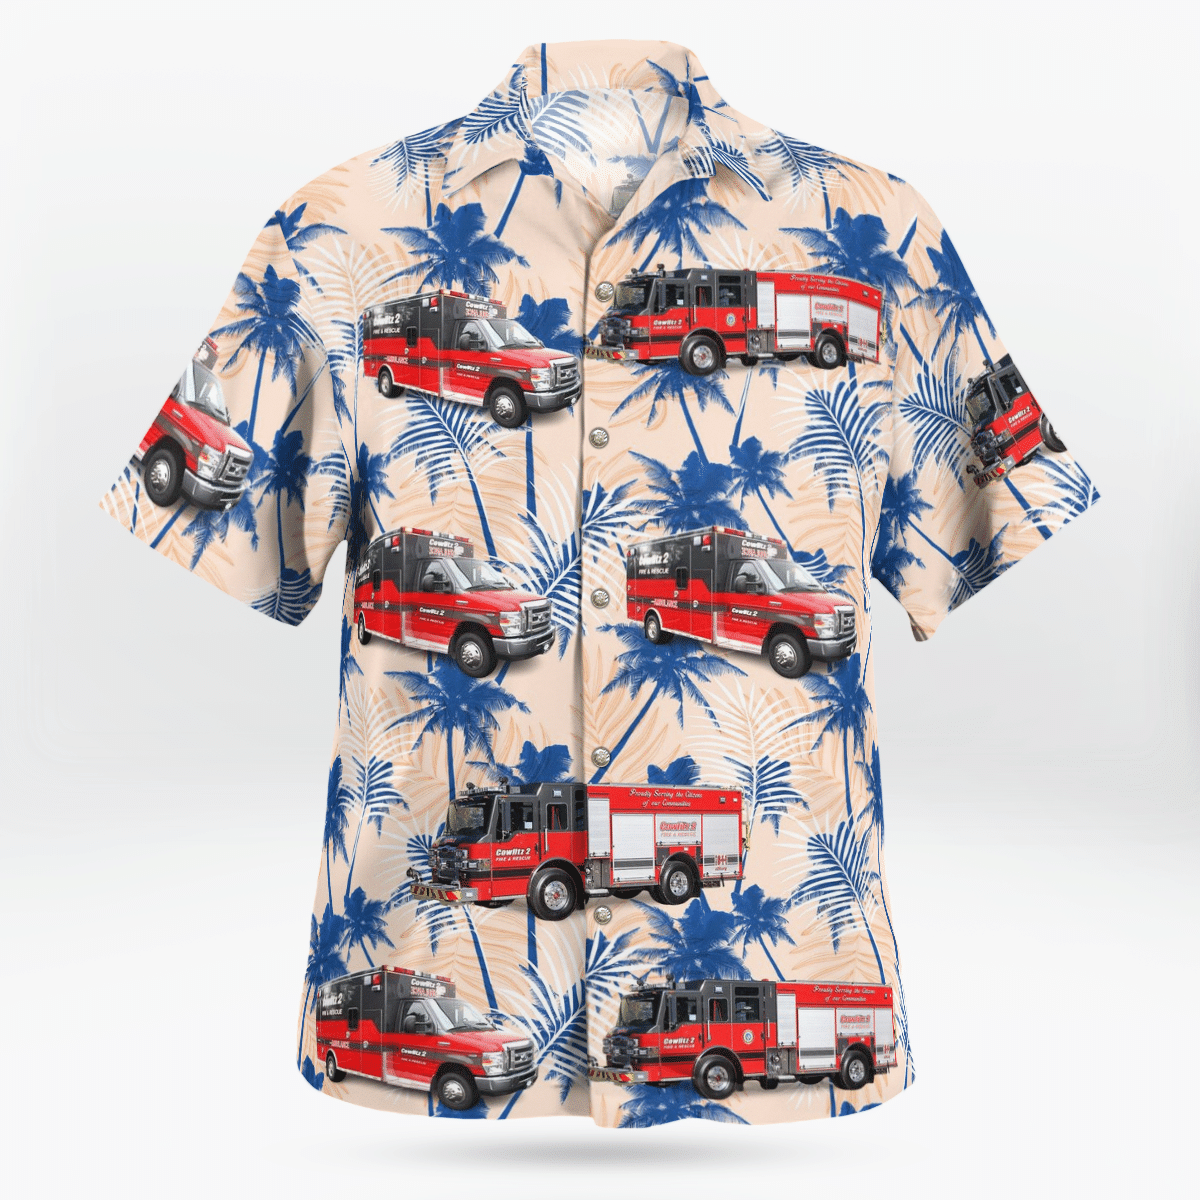 HOT Kelso Washington Cowlitz 2 Fire & Rescue Hawaii Shirt 2